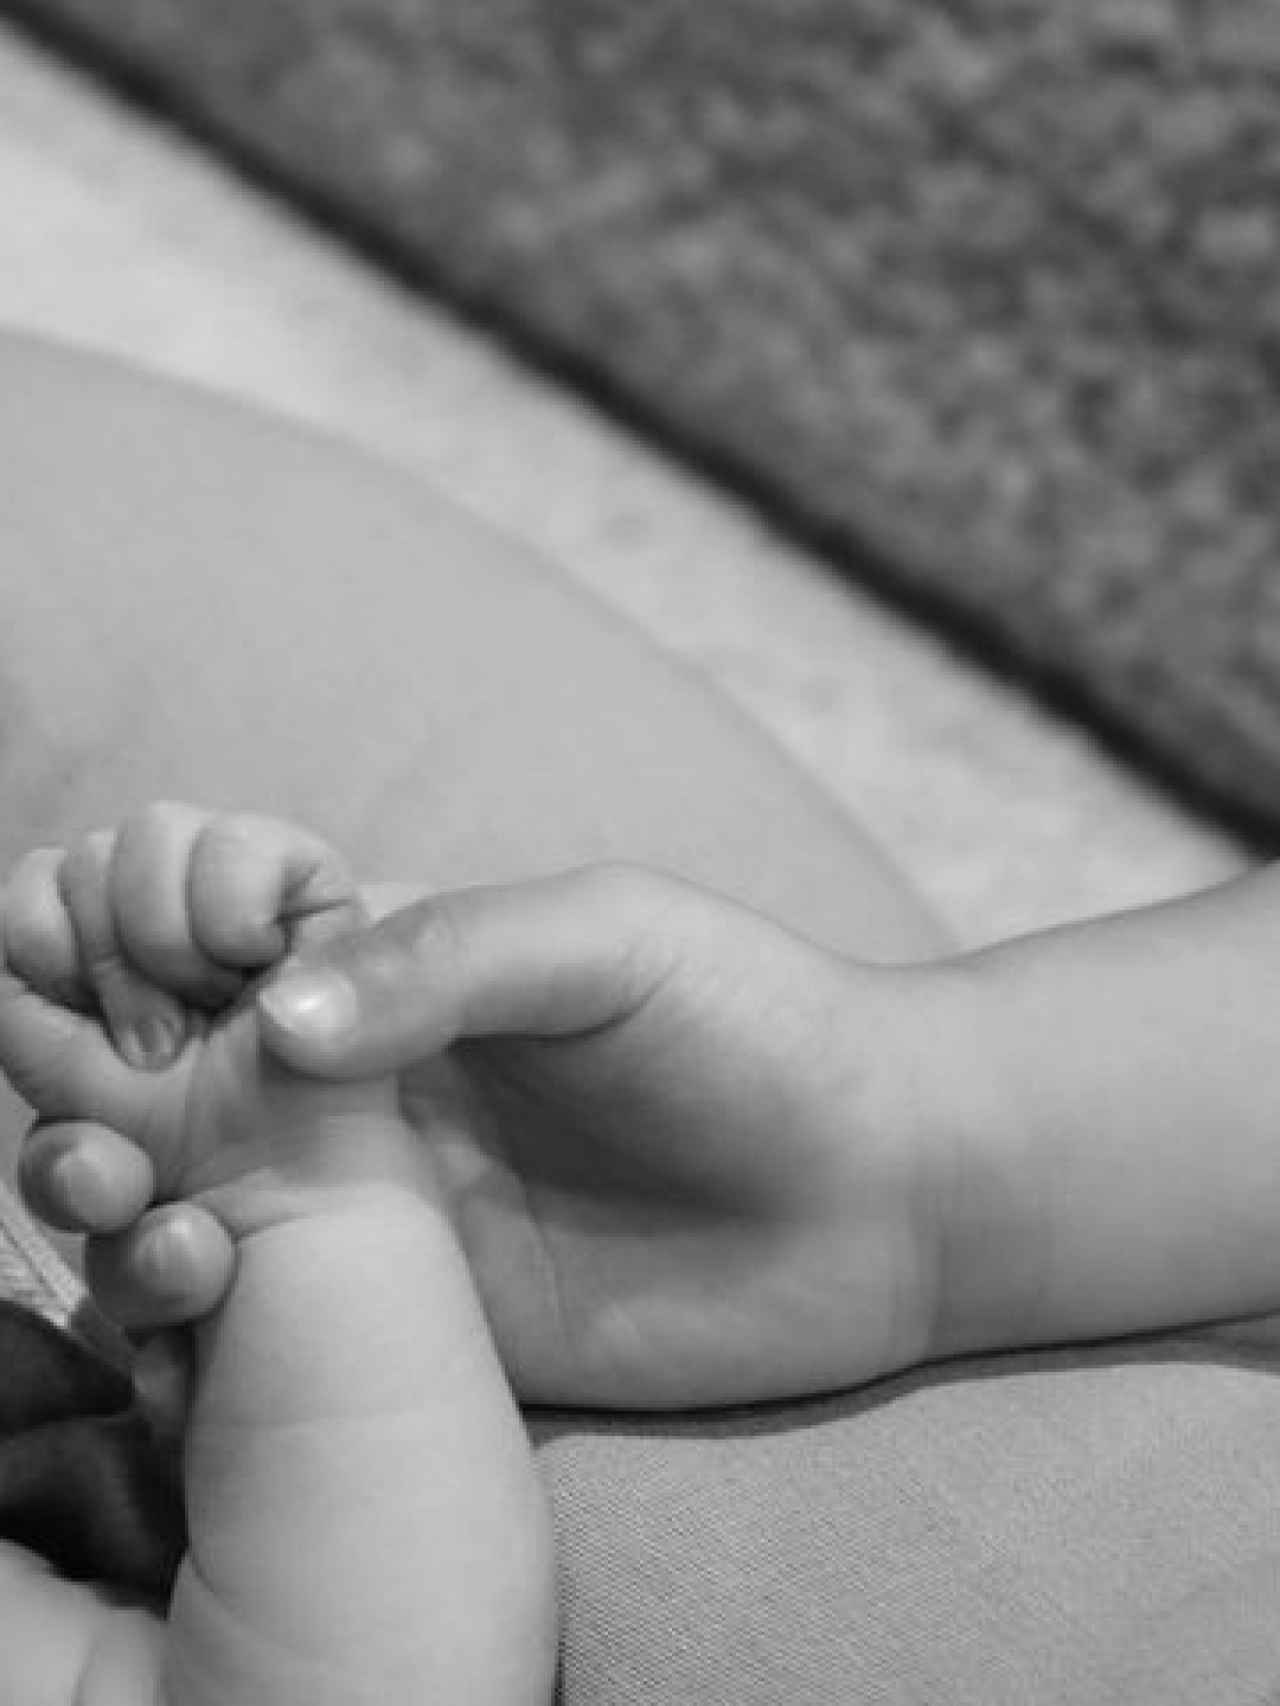 Kylie Jenner ha compartido esta tierna imagen de la mano de su segundo bebé y la mano de Stormi.